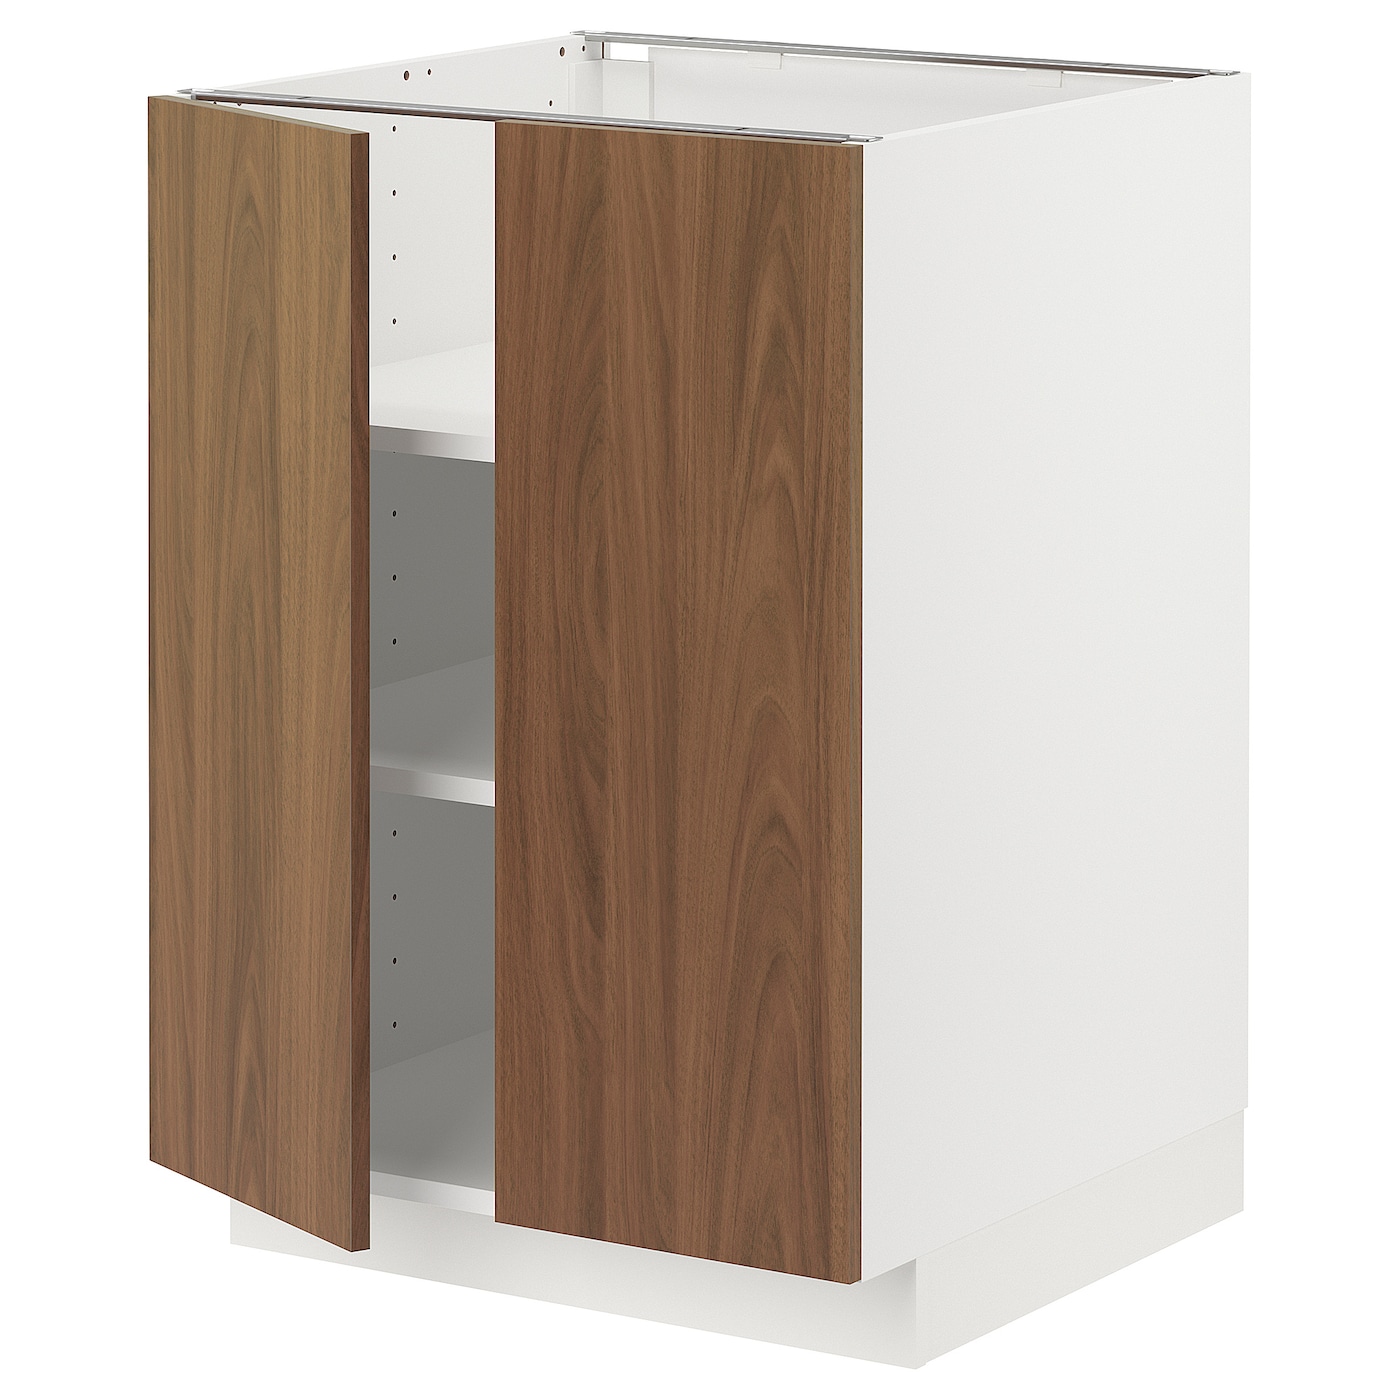 Напольный шкаф - METOD IKEA/ МЕТОД ИКЕА,  60х60  см, белый/коричневый